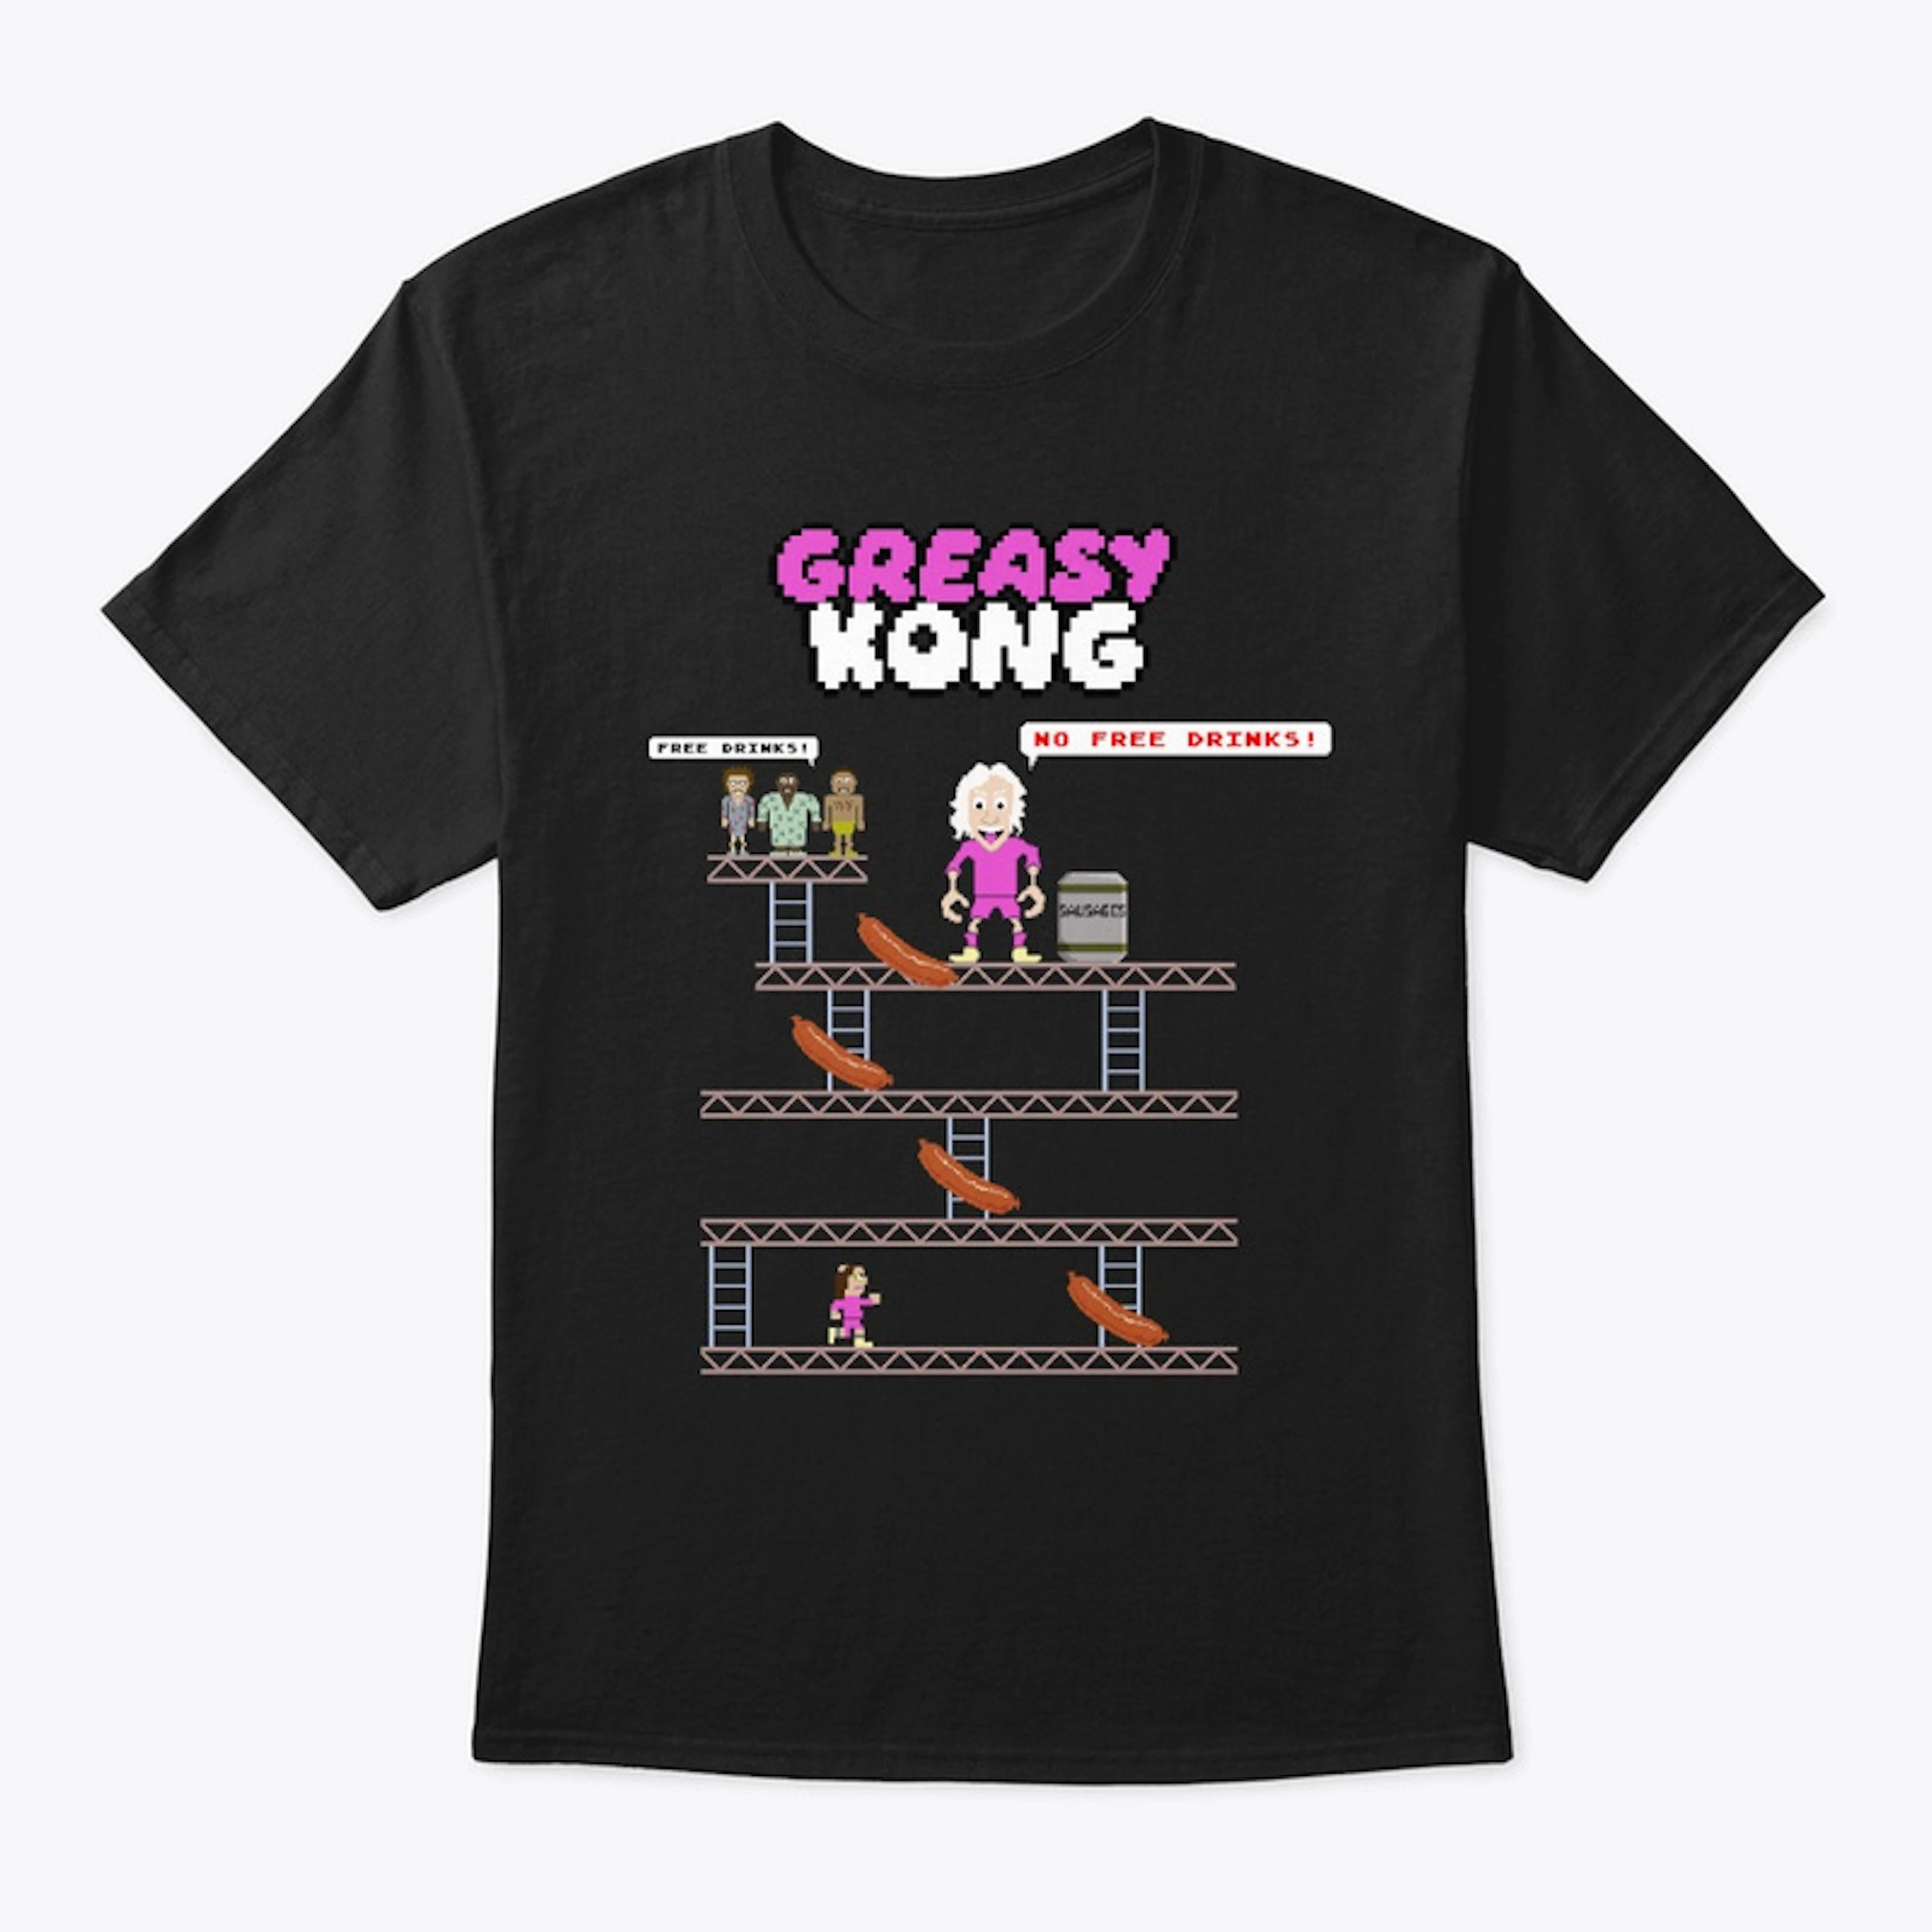 Greasy Kong